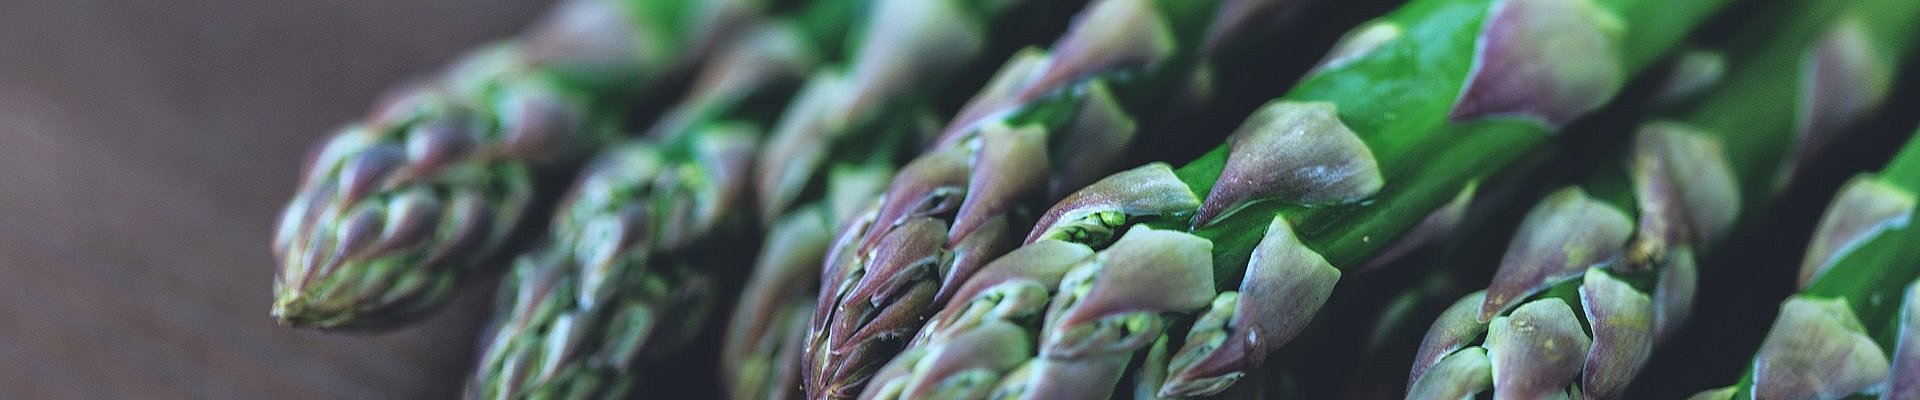 Grønne asparges fra danske lokalproducenter